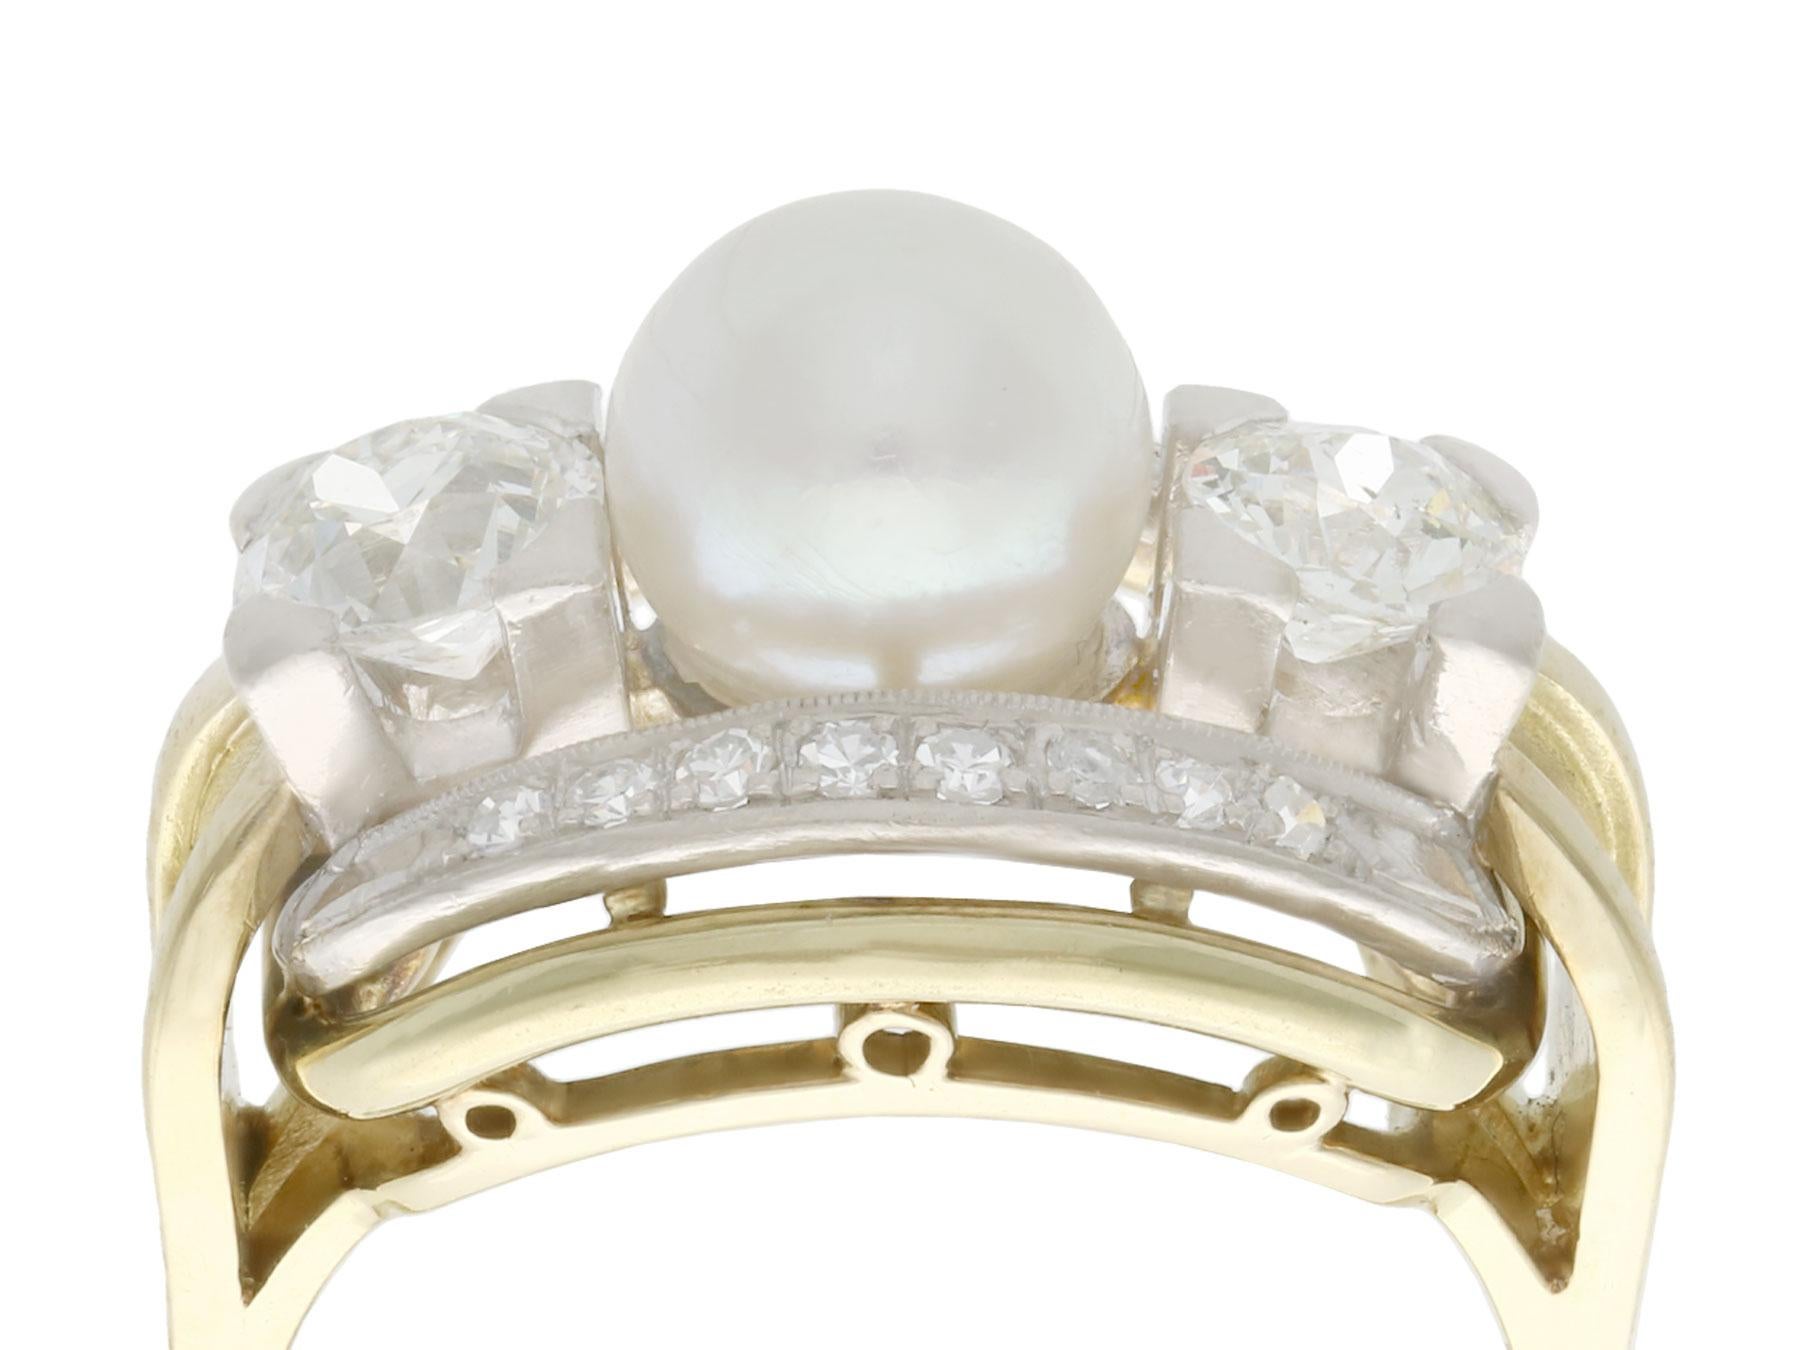 Dieser atemberaubende, feine und beeindruckende Perlen- und Diamantring ist aus 14-karätigem Gelbgold mit einer 14-karätigen Weißgoldfassung gefertigt.

Der ovale, durchbrochene und verzierte Rahmen ist mit einer beeindruckenden 7 mm großen